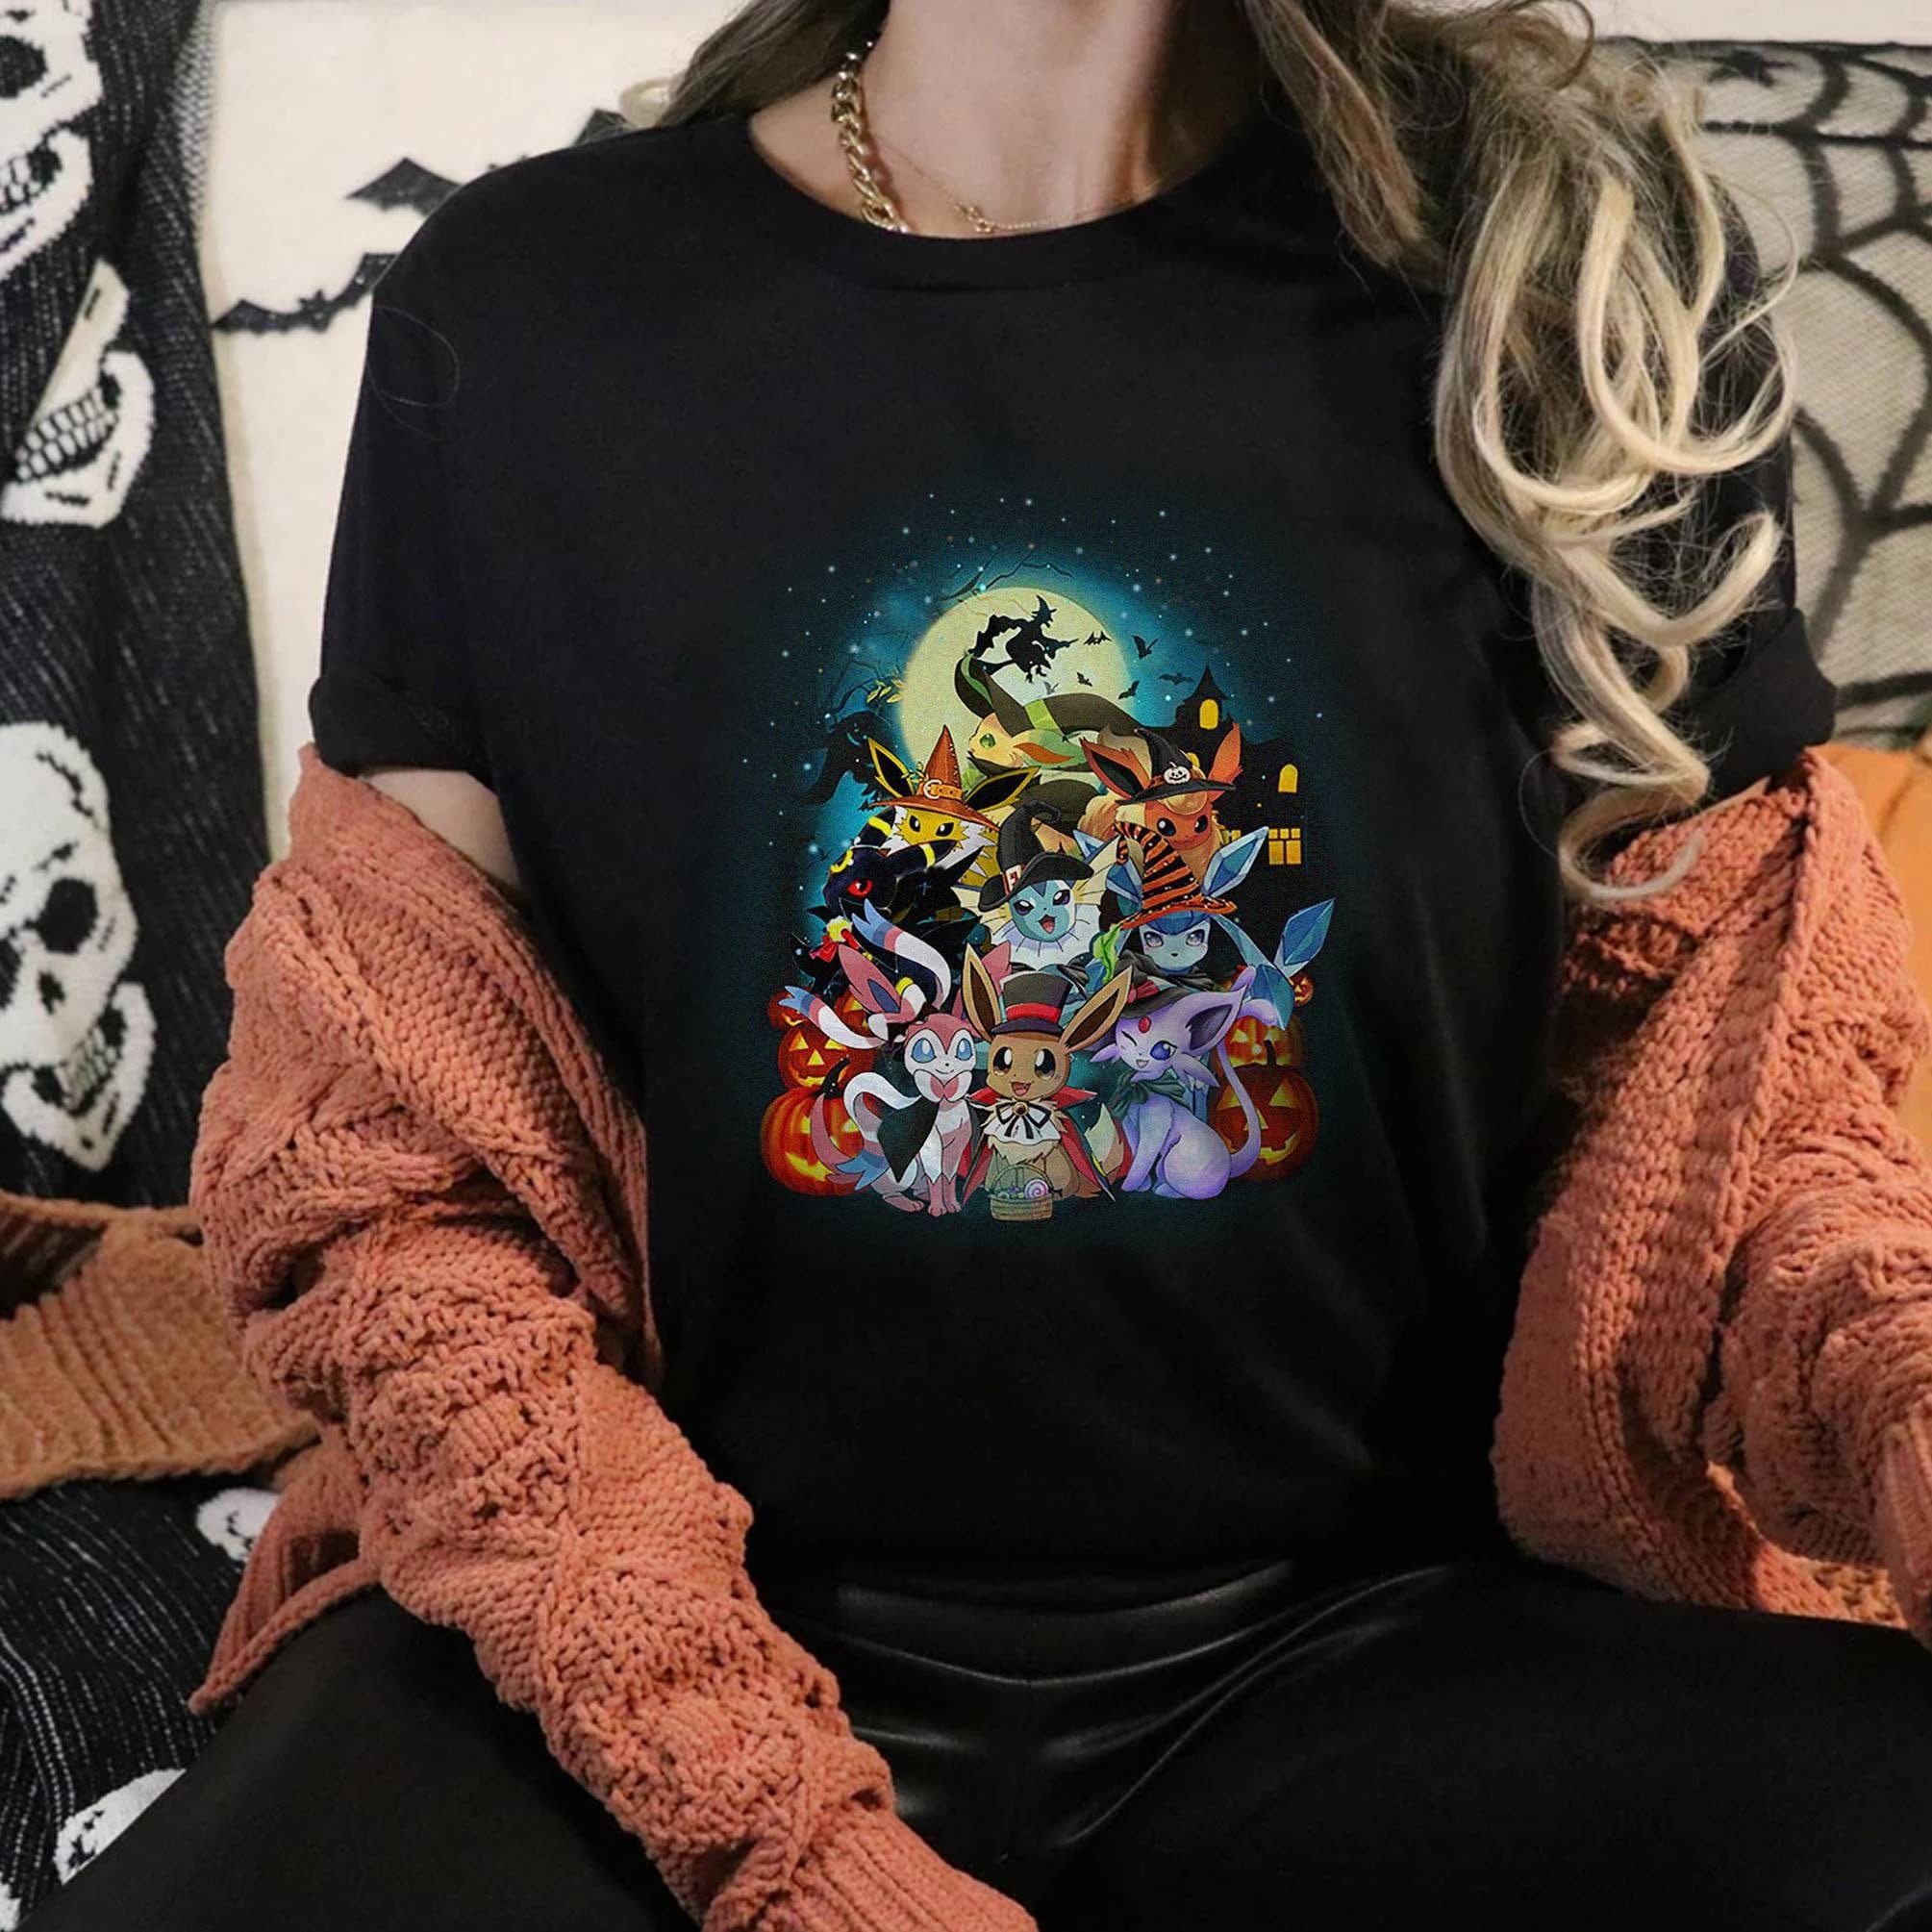 GraemeGiftStore Eevee Shirt, Eeveelution Shirt, Eevee Evolutions Shirt, Eevee Halloween Shirt, Halloween Gifts, Eevee Birthday Shirt, Anime Fan Gifts